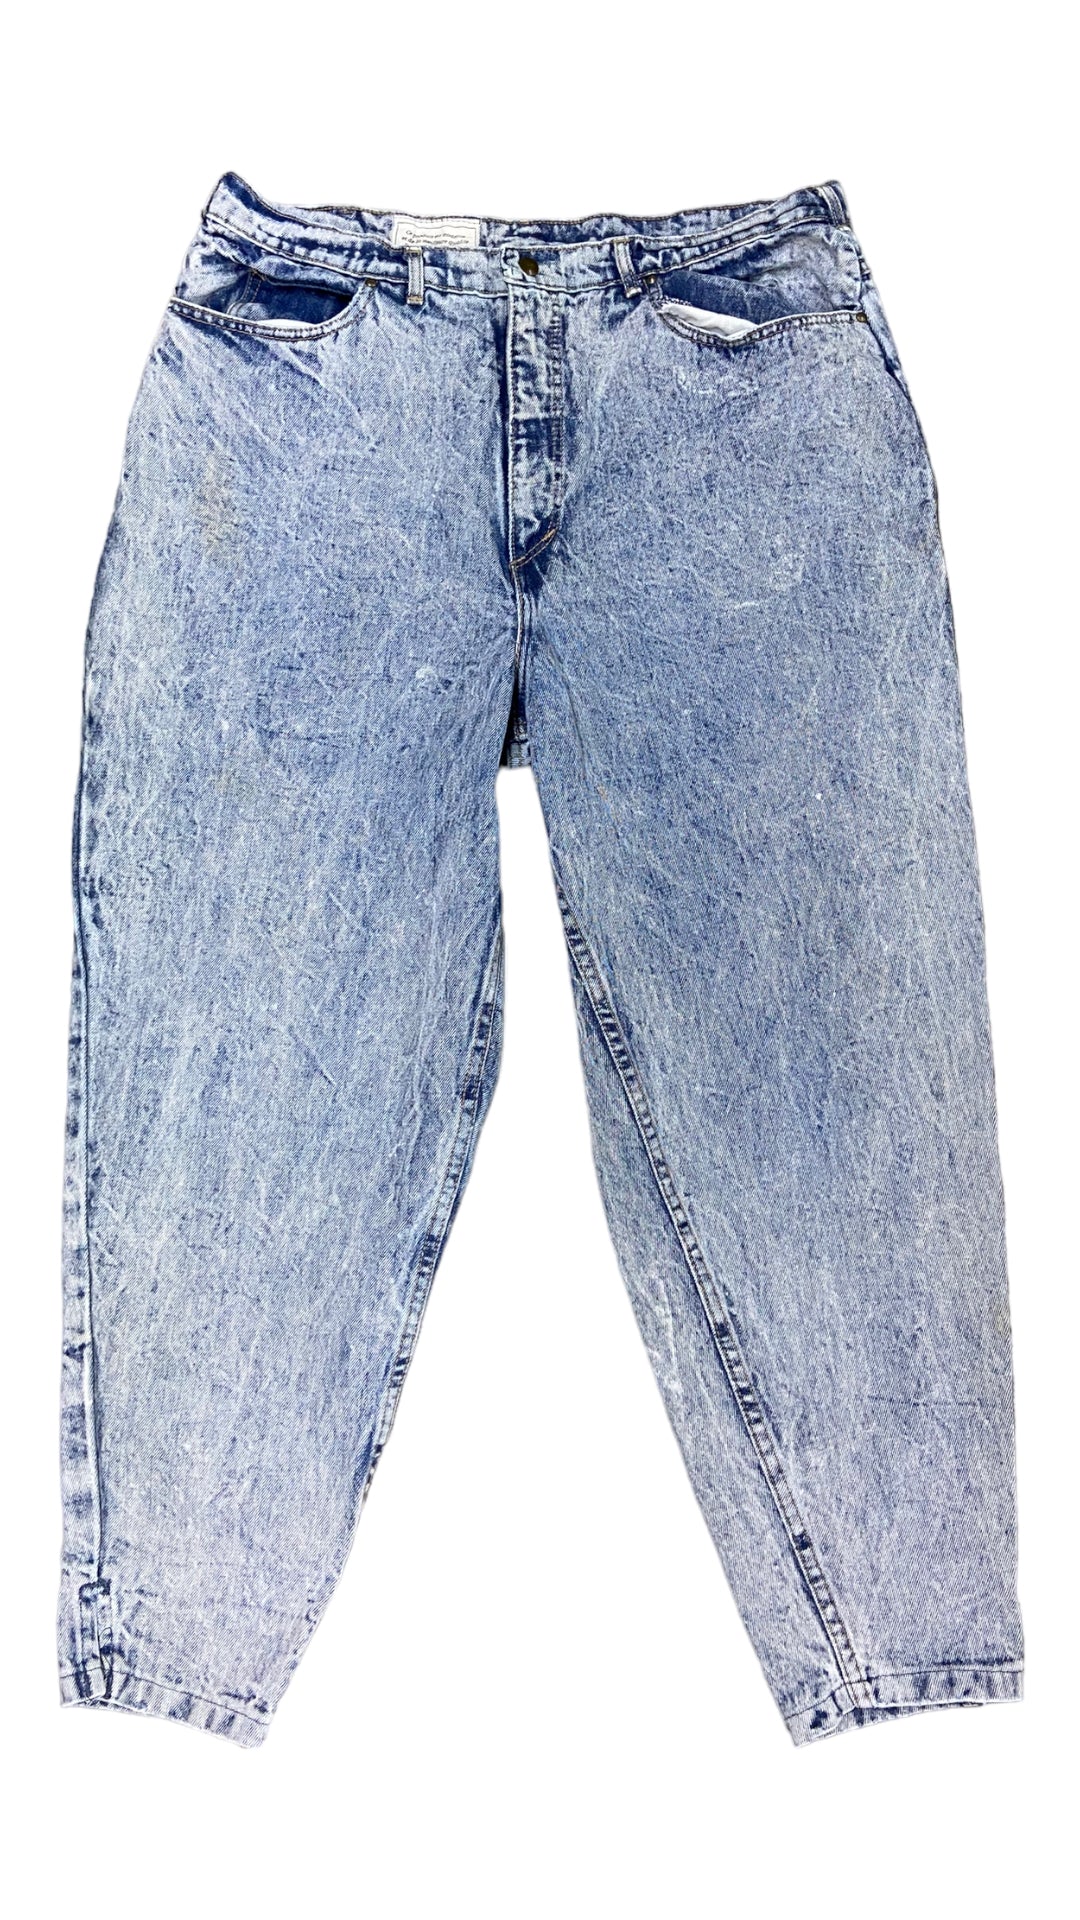 VTG G.O.B Geneva Acid Washed Jeans Sz 36x31